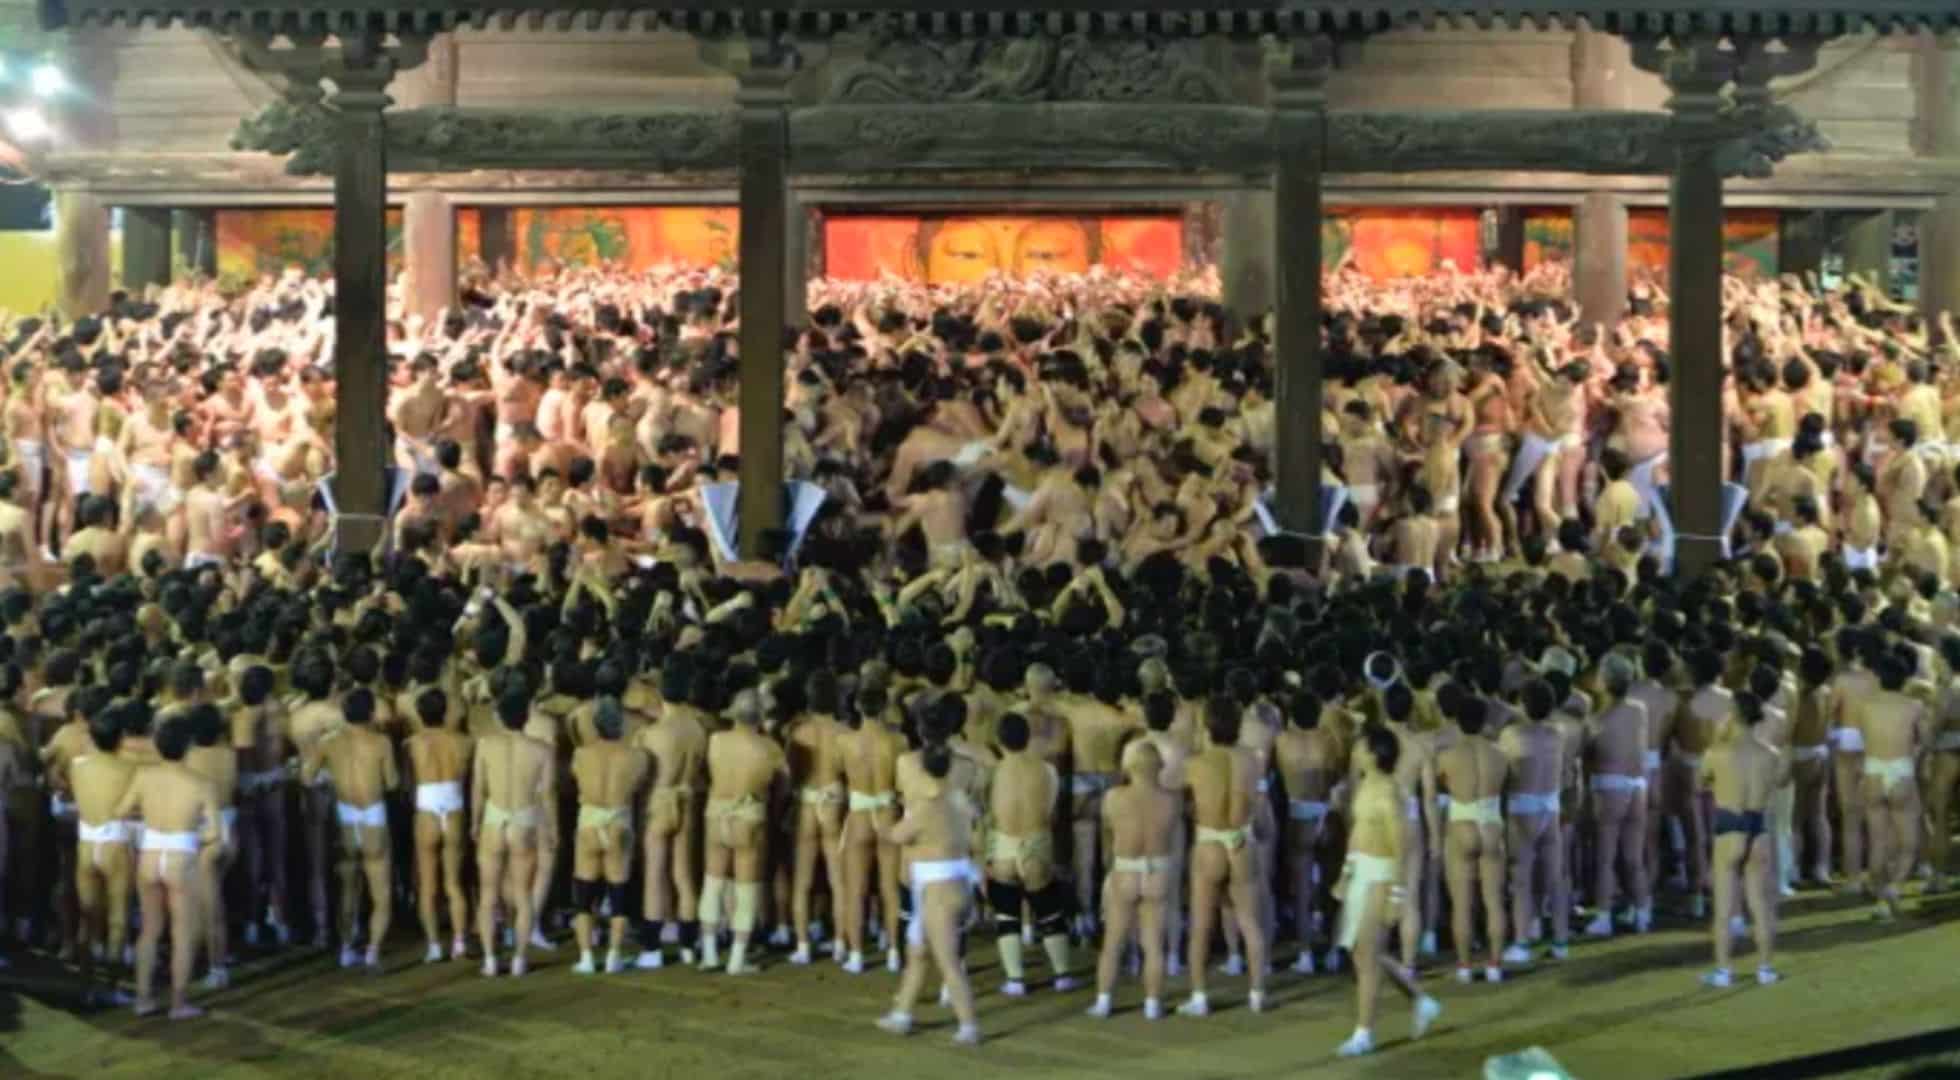 International Festivals: Naked Festival in Japan